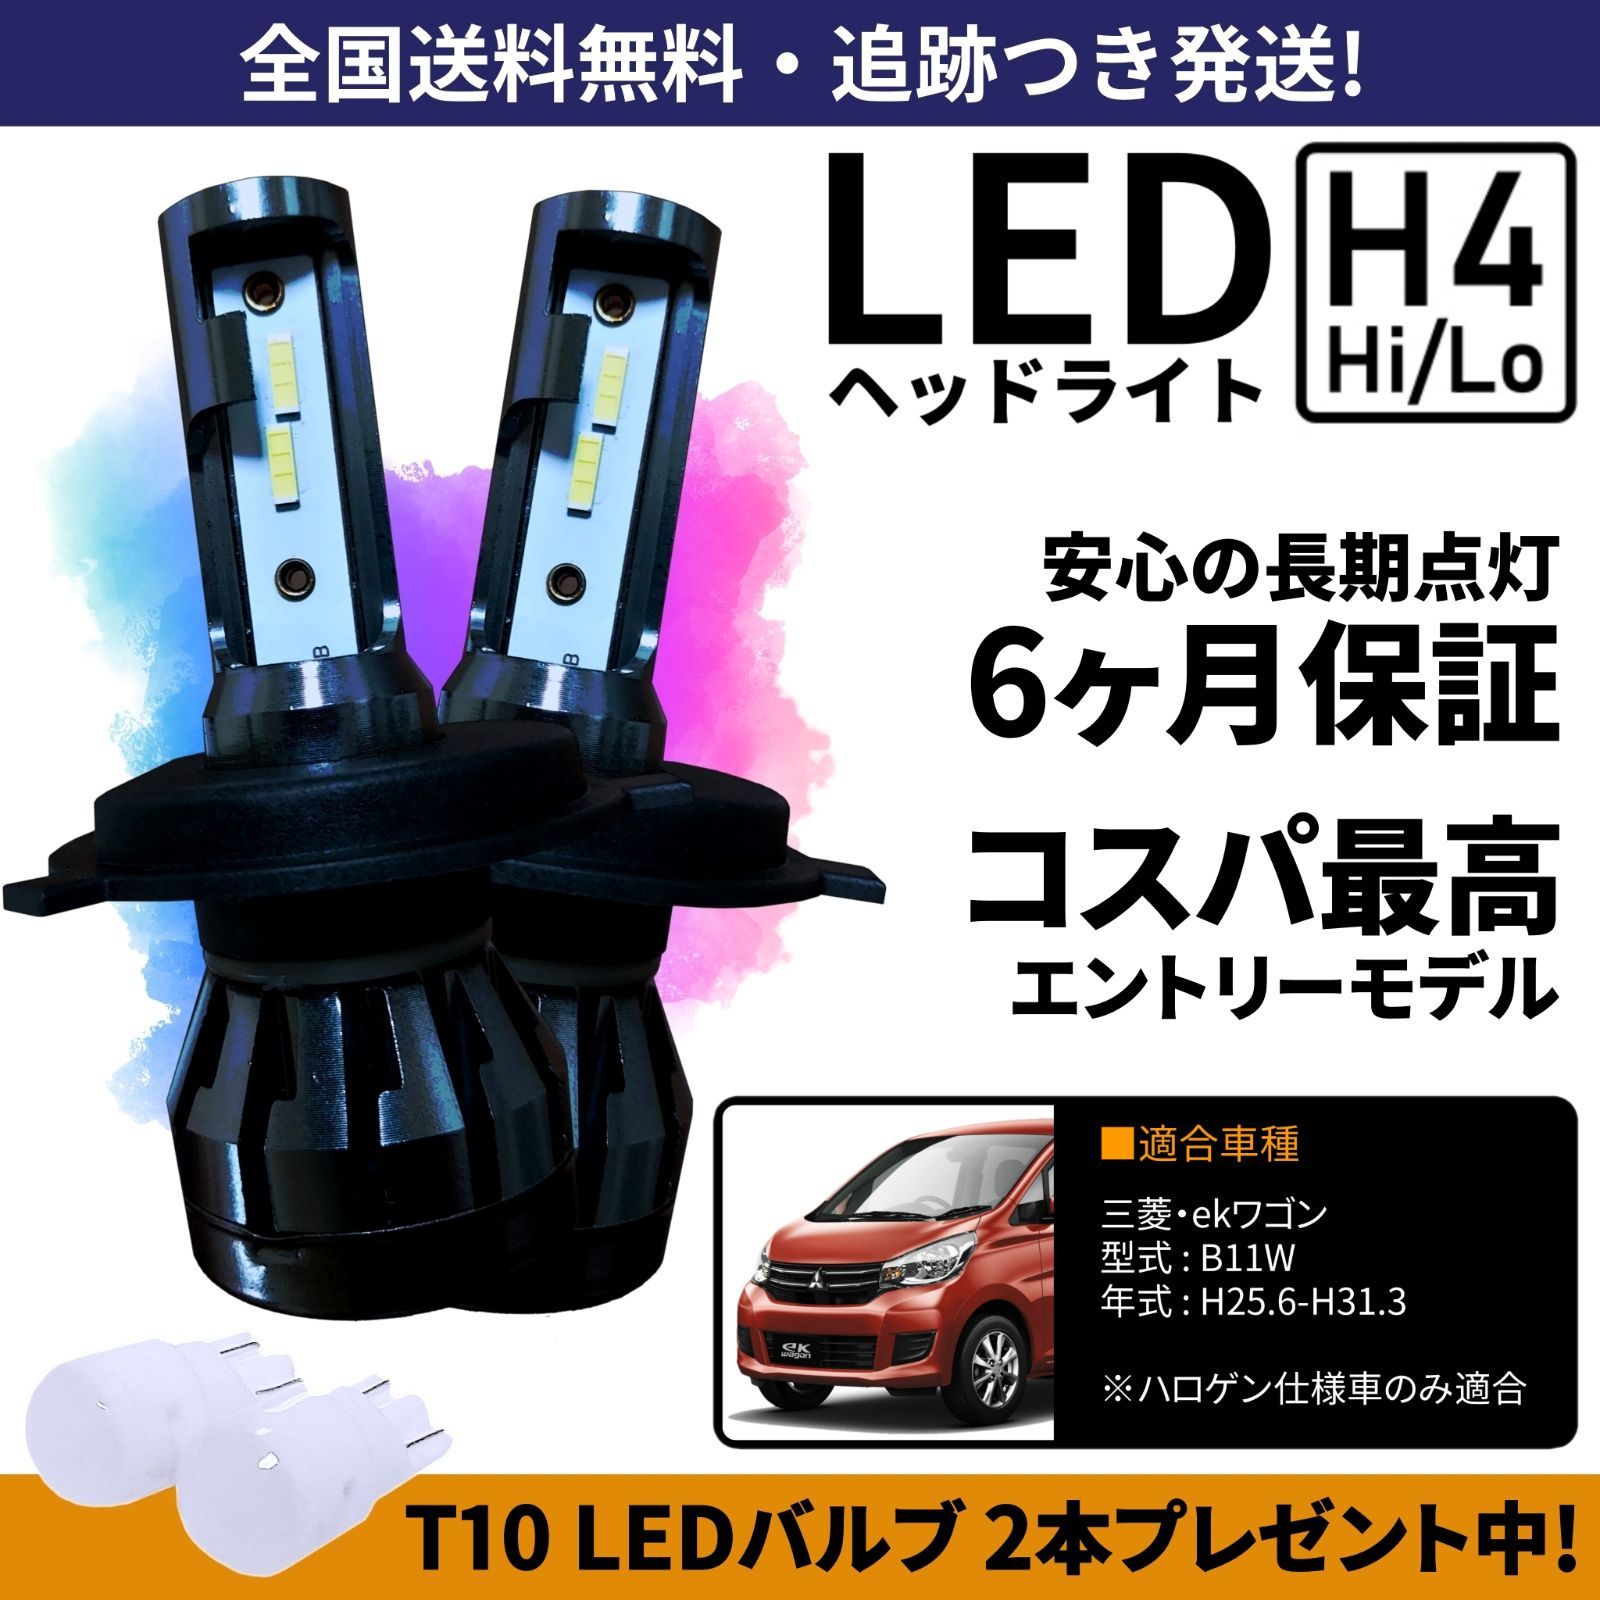 送料無料】三菱 ekワゴン B11W LEDヘッドライト H4 Hi/Lo ホワイト 6000K 車検対応 保証付き - メルカリ